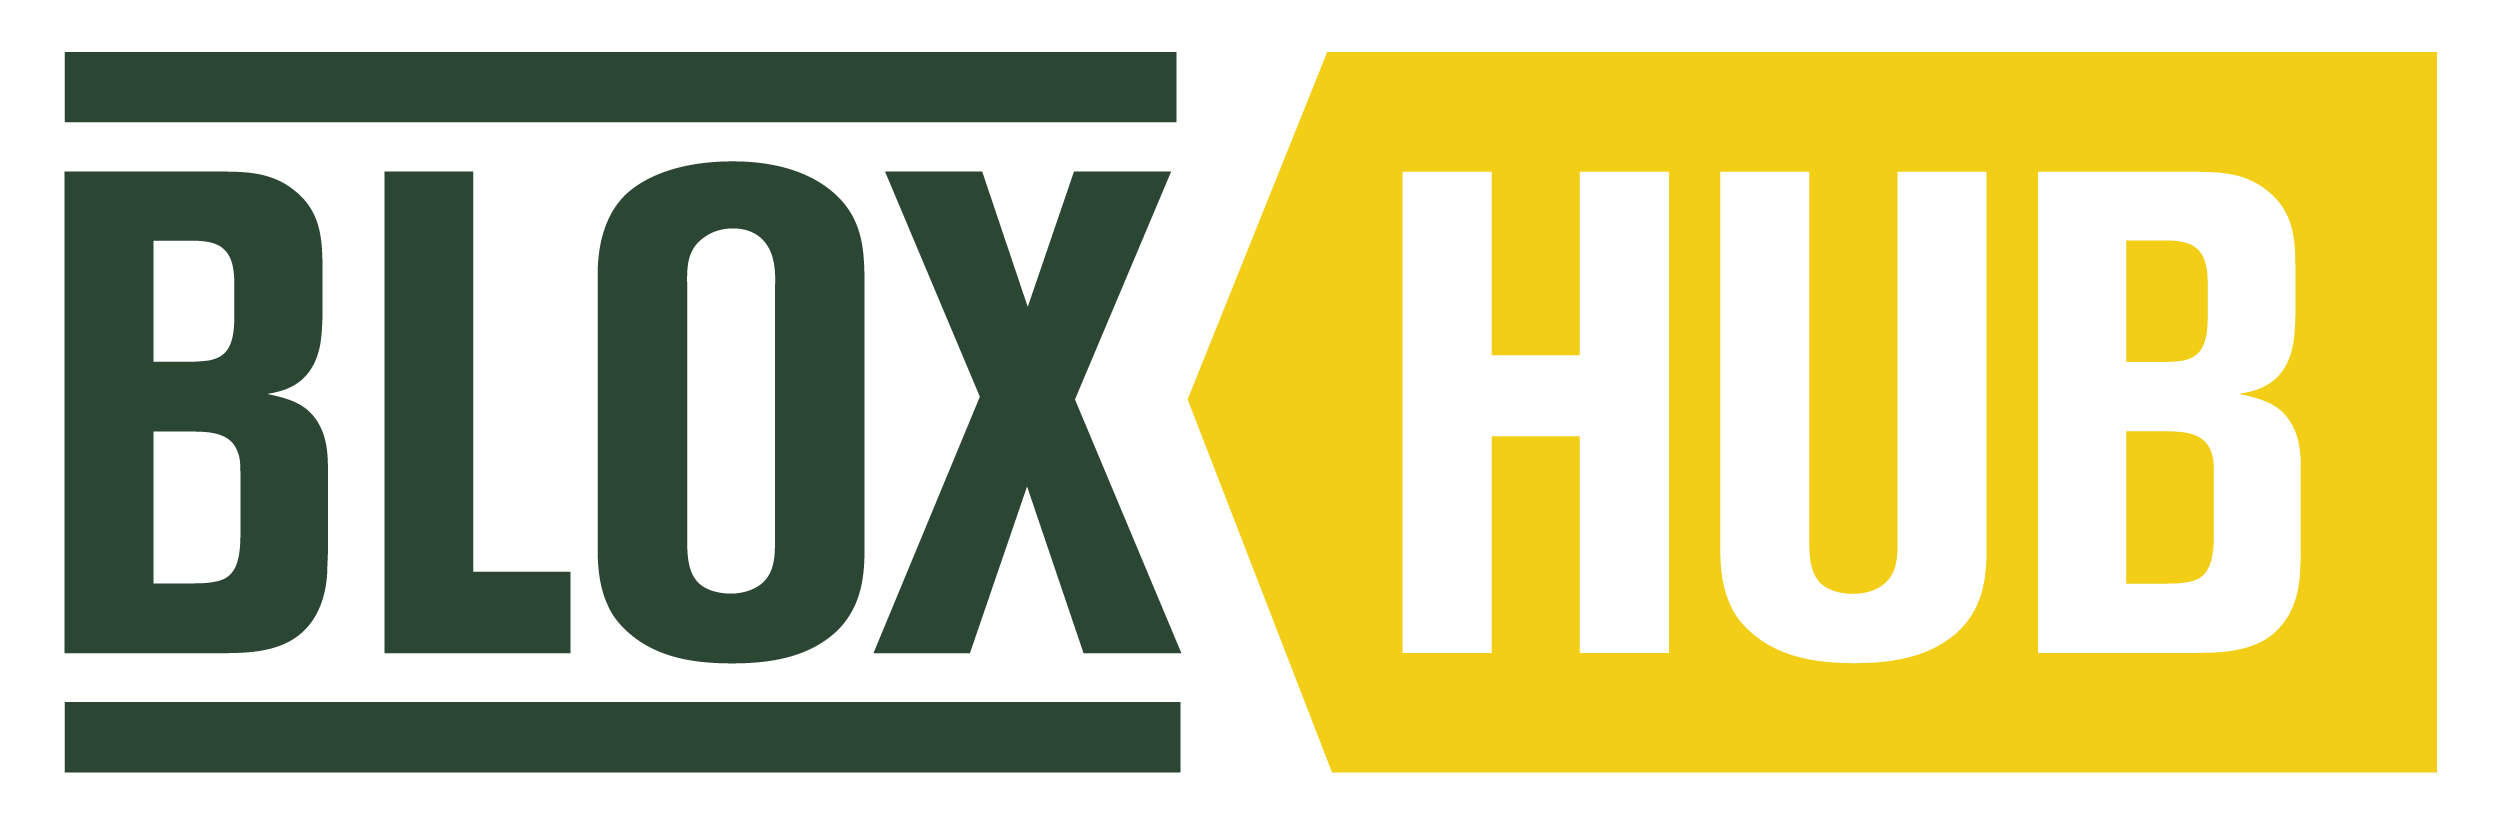 Blox Logo - BLOXHUB. Our Urban Future. Co Created